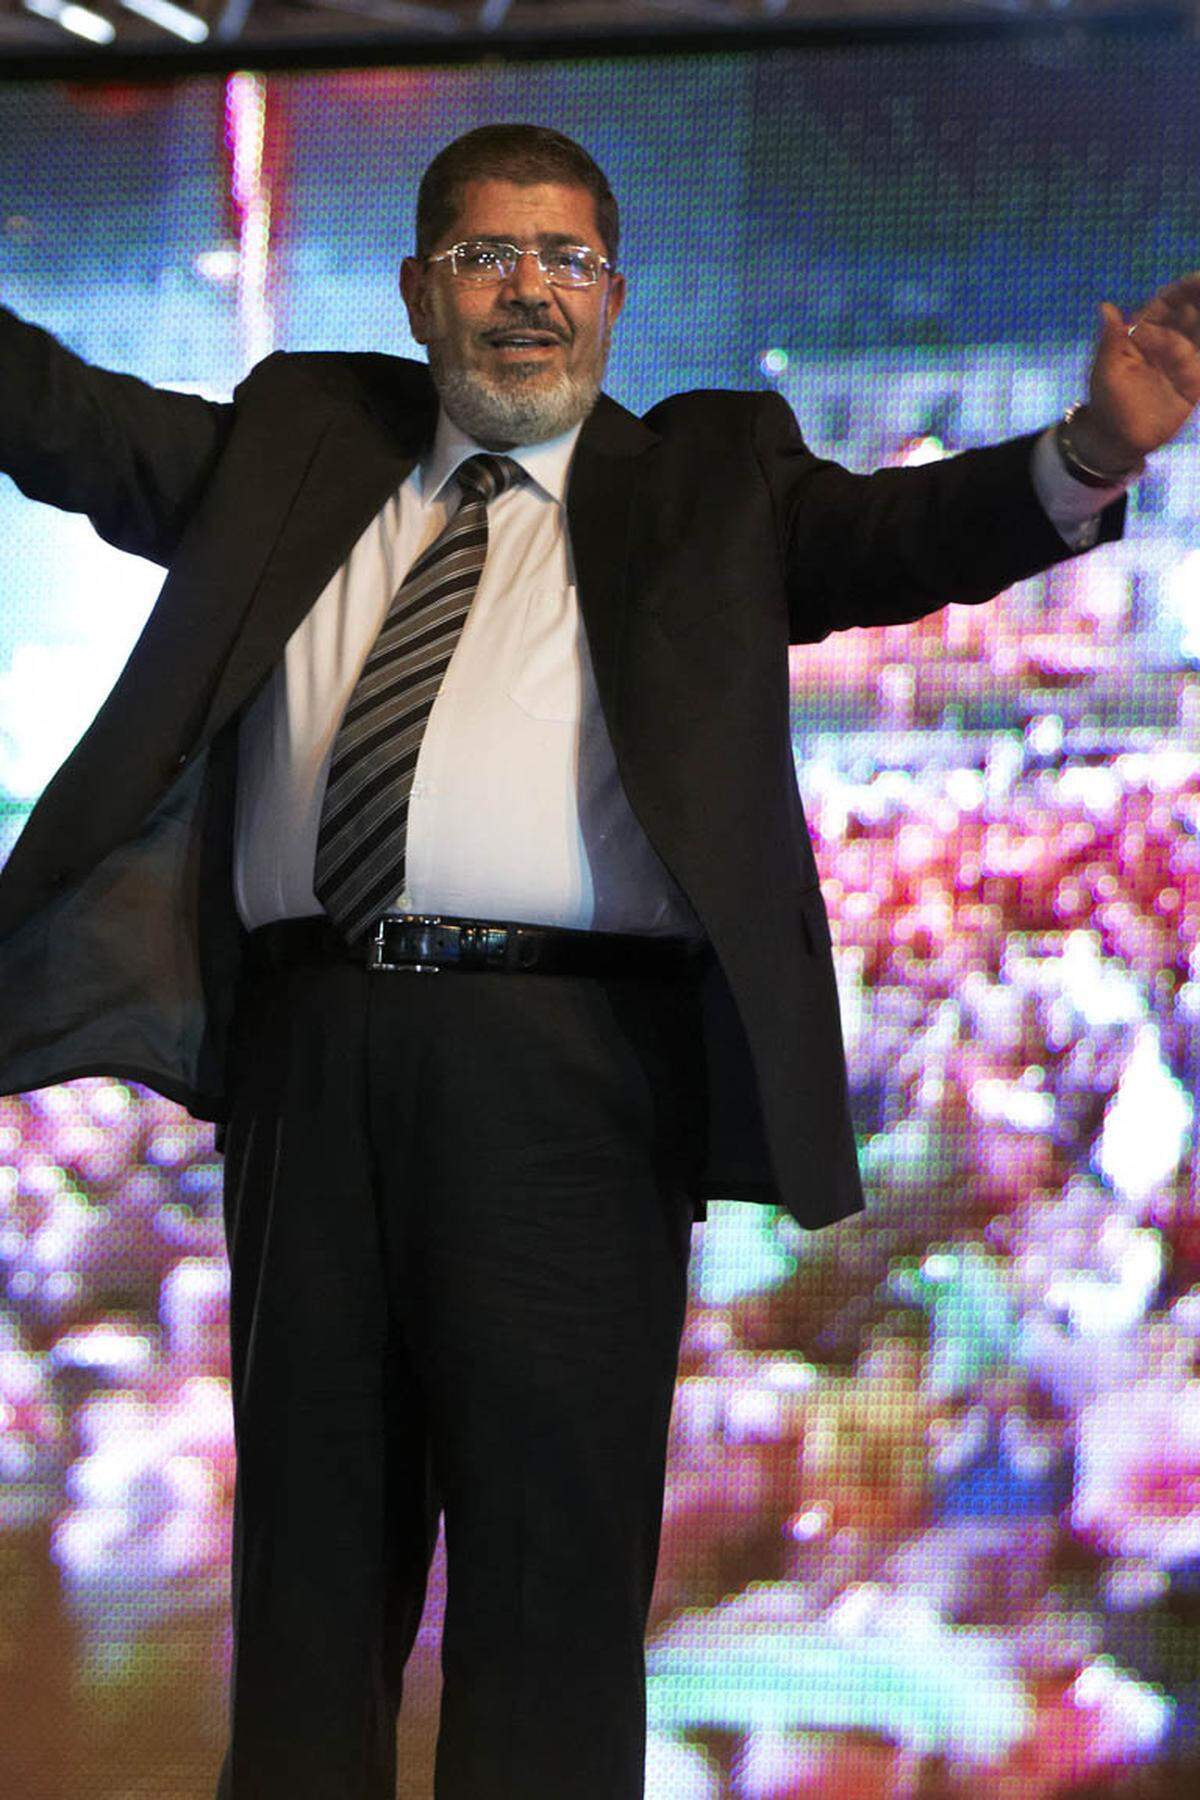 Mohammed Mursi, der Kandidat der Muslimbruderschaft kam im ersten Wahlgang mit 24,8 Prozent auf Platz eins. Mursi gehört dem konservativen Flügel der Bewegung an. Er wirbt für eine "islamische Renaissance".Wenige Stunden nach Wahlende erklärten die Islamisten Mursi bereits zum Sieger. Er habe nach inoffiziellen Ergebnissen aus 12.793 der landesweit 13.000 Wahllokale bei mehr als eine Million Stimmen mehr erhalten als sein Konkurrent, Ahmed Shafik. Eine offizielle Bestätigung dafür gibt es noch nicht.